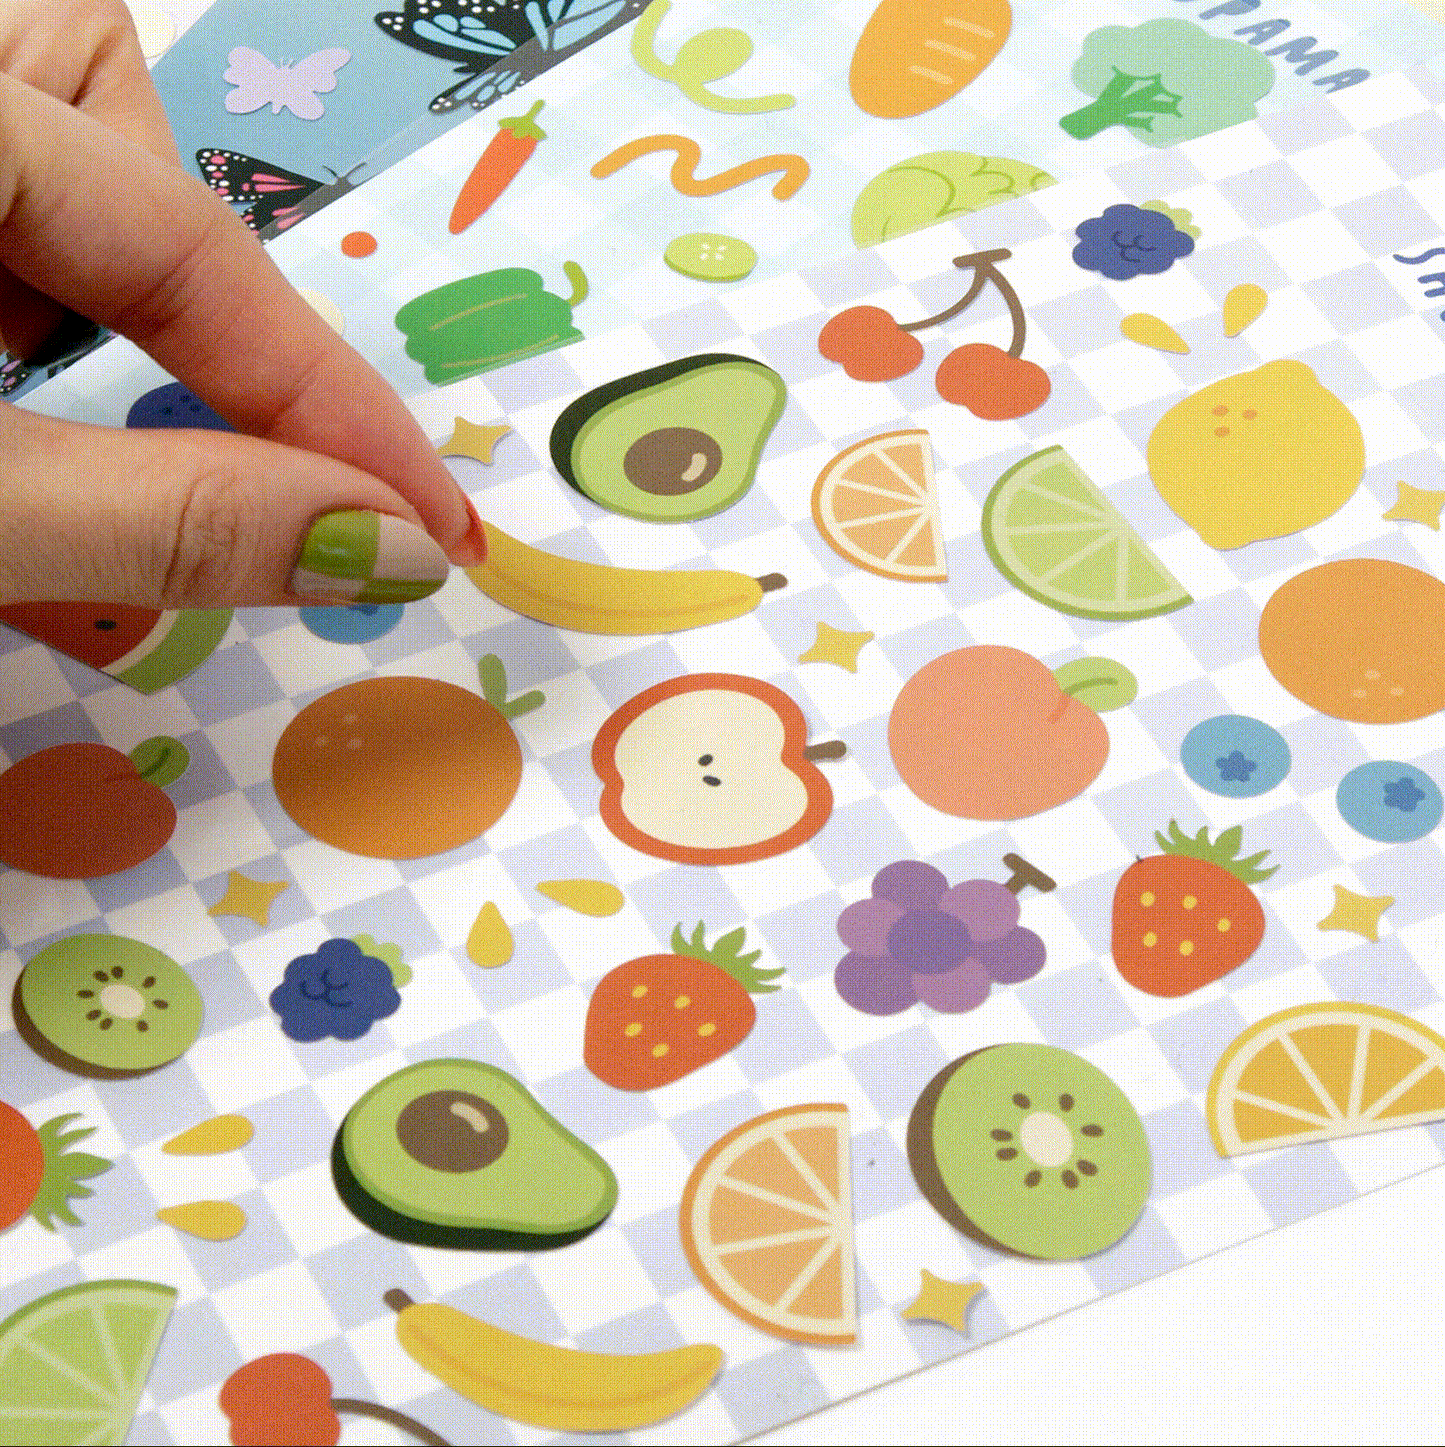 Fruit Sticker Sheet